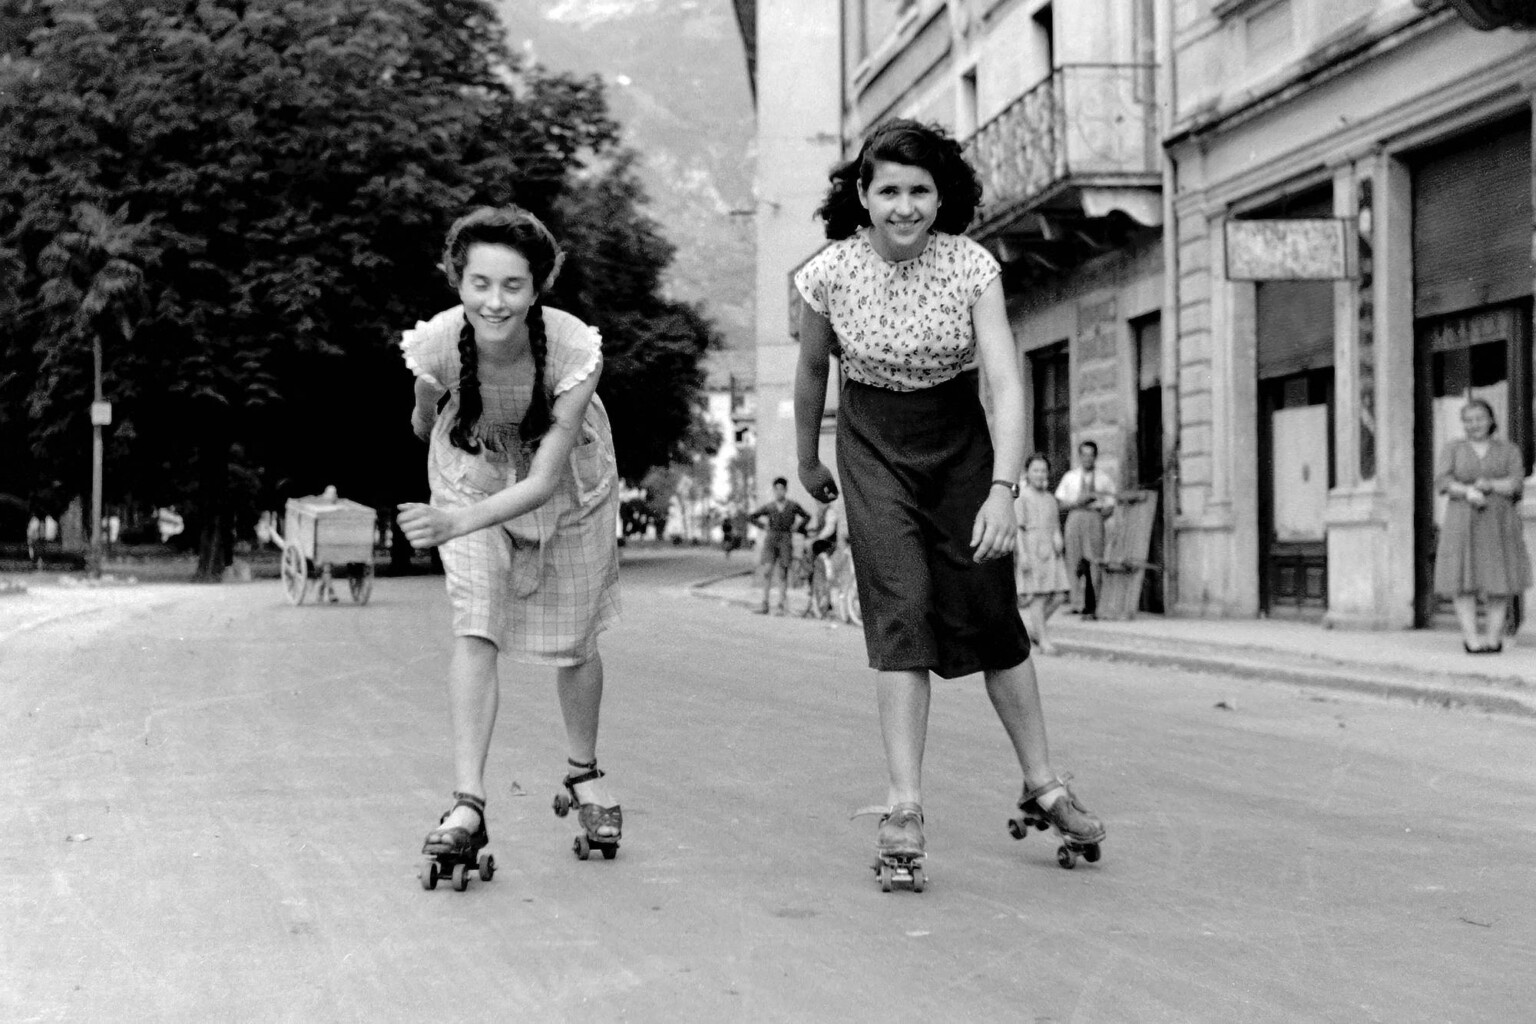 Giovanni Skulina, Due ragazze pattinano in via Garberie, Arco, 1946 - Courtesy MAG